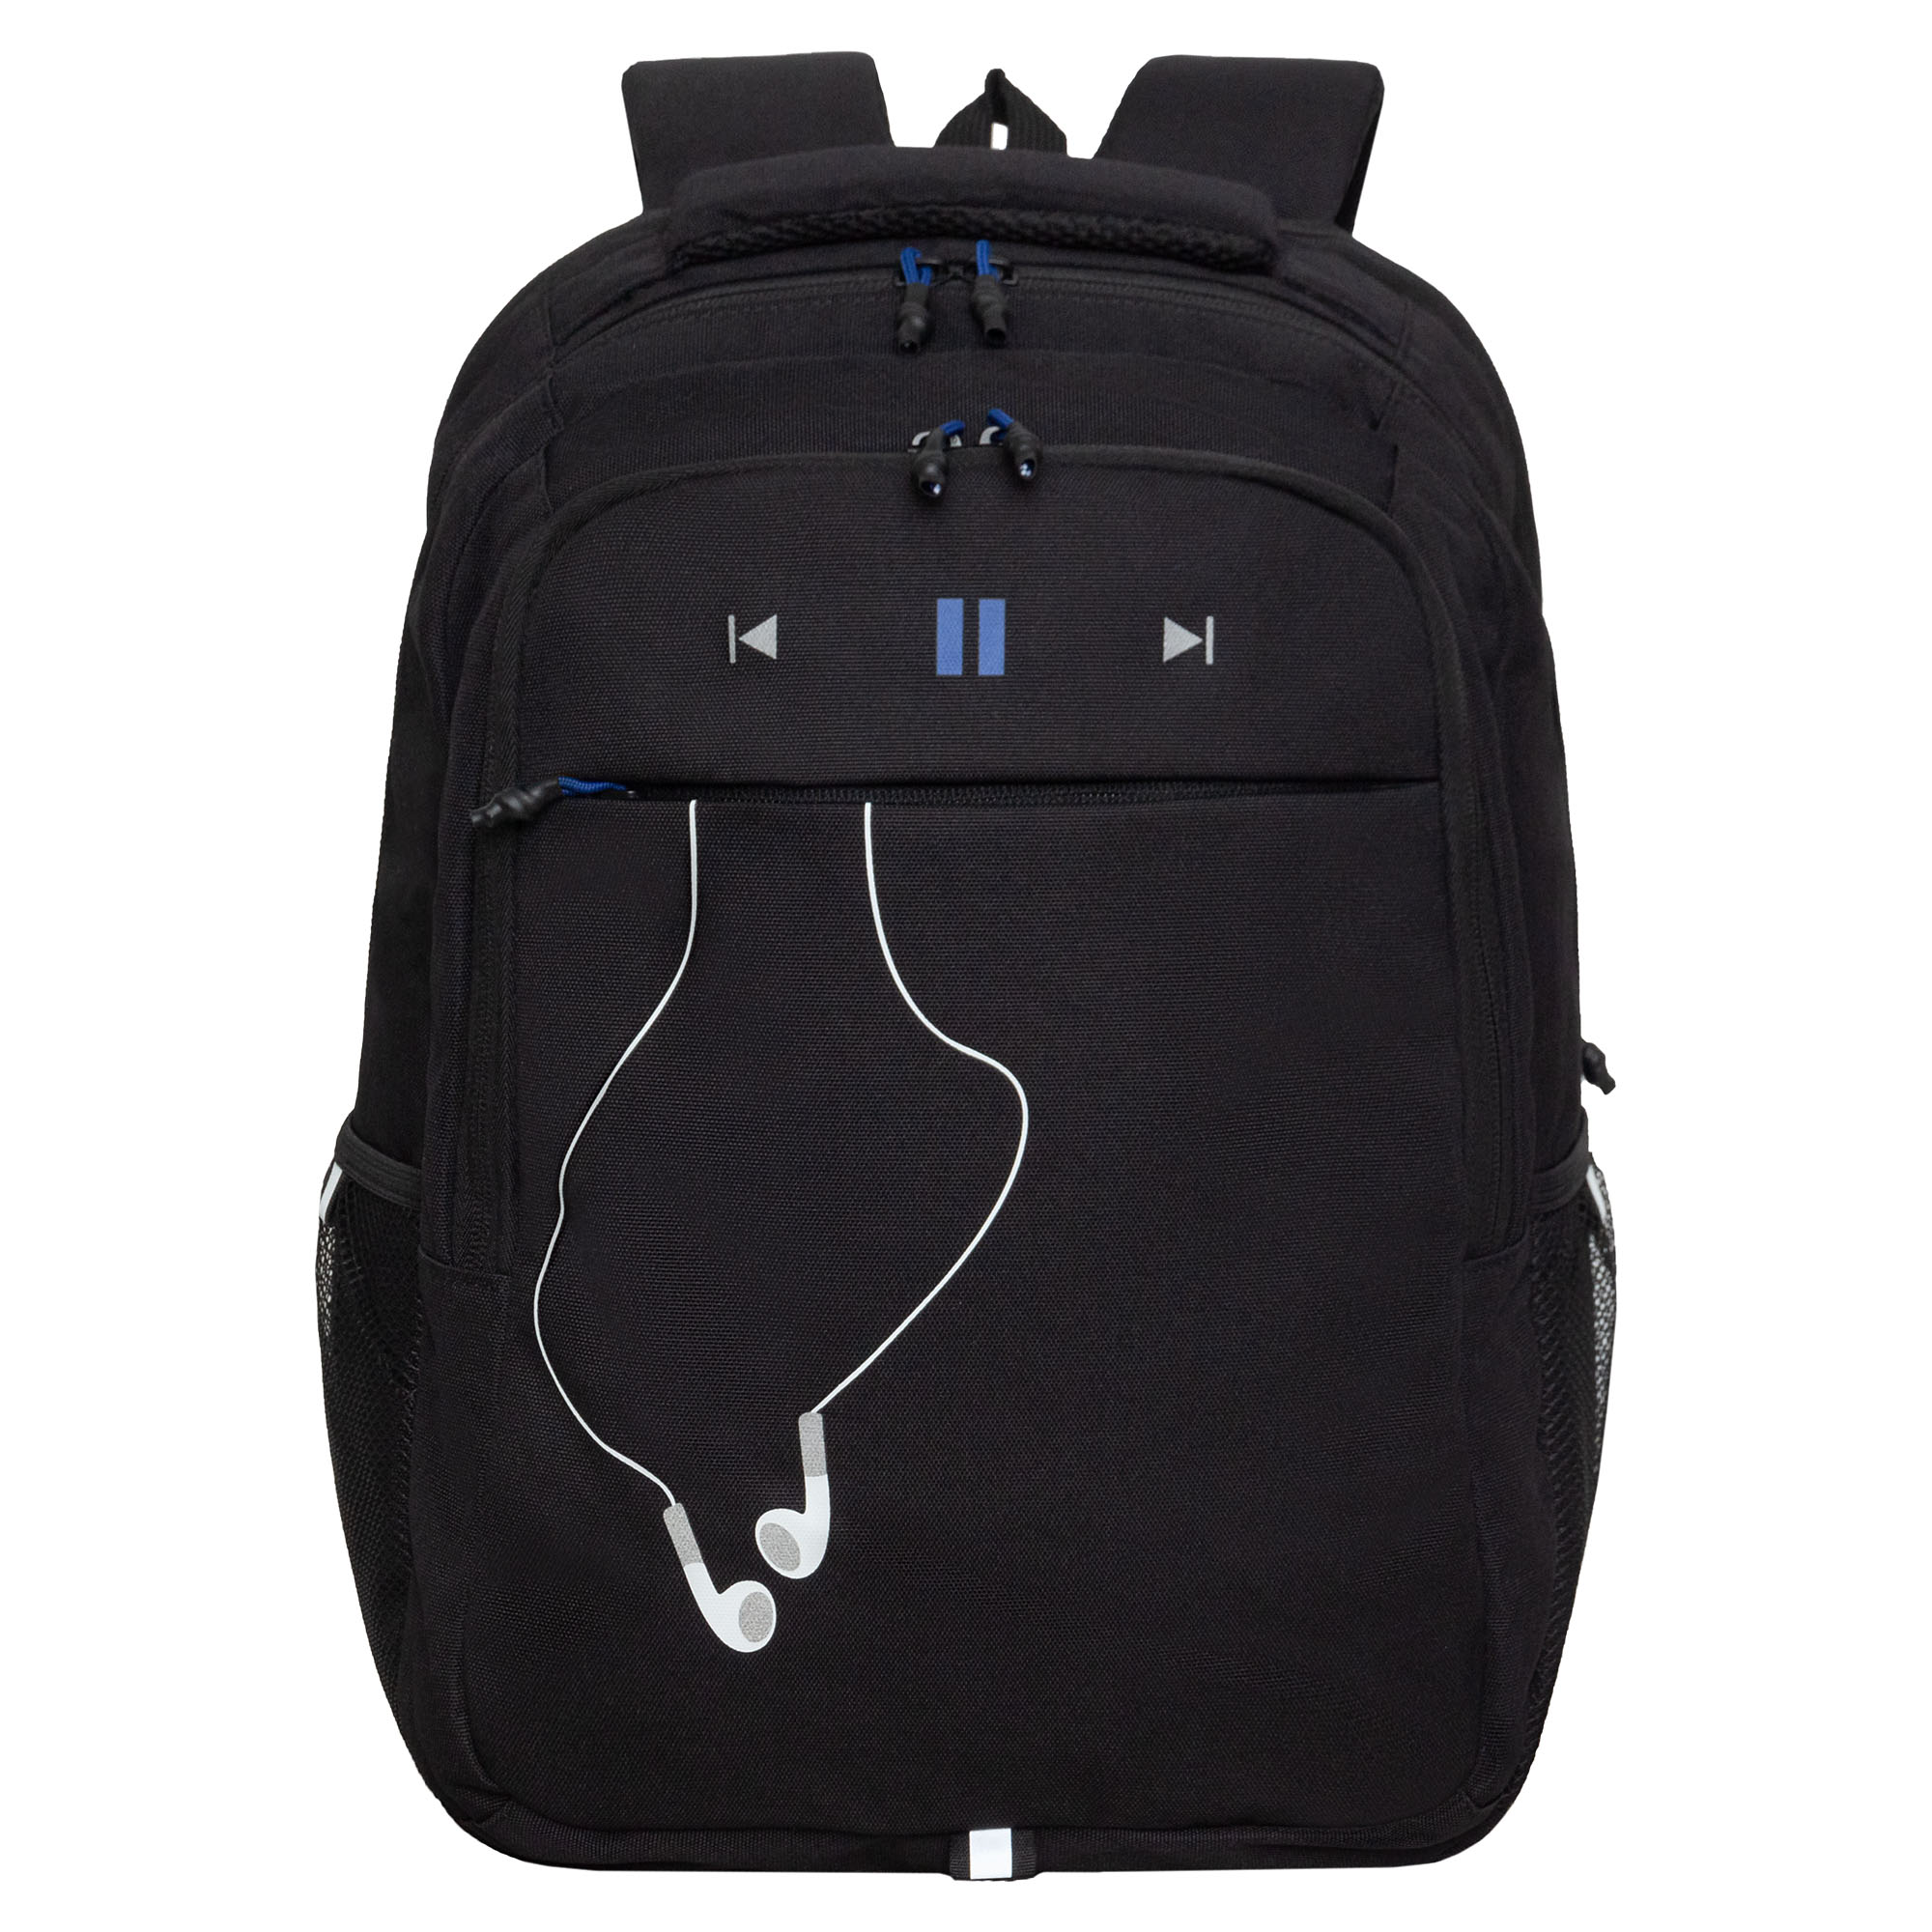 Рюкзак молодежный Grizzly с карманом для ноутбука 15, RU-432-4/3, черный, синий рюкзак молодежный из текстиля на молнии наружный карман синий